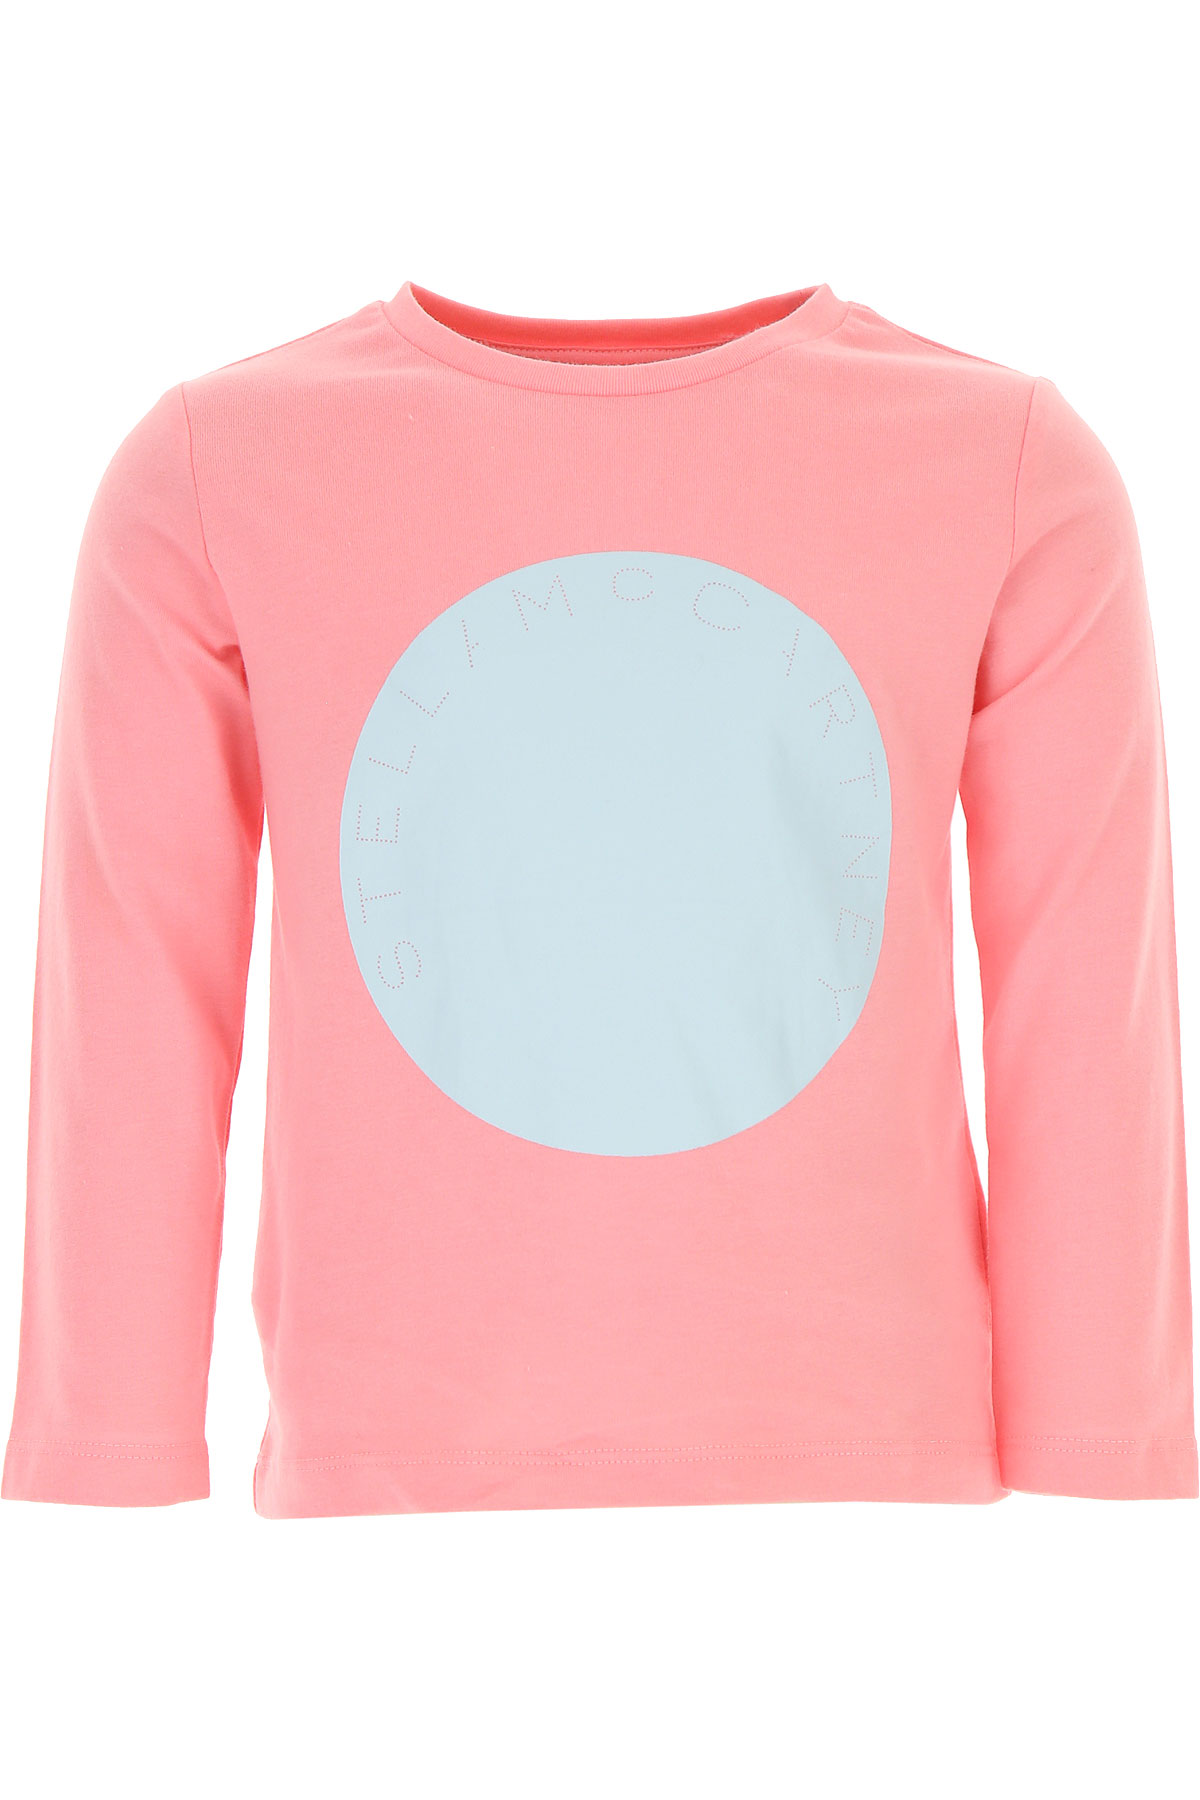 Stella McCartney Kinder T-Shirt für Mädchen Günstig im Sale, Pink, Baumwolle, 2017, 10Y 12Y 14Y 4Y 6Y 8Y